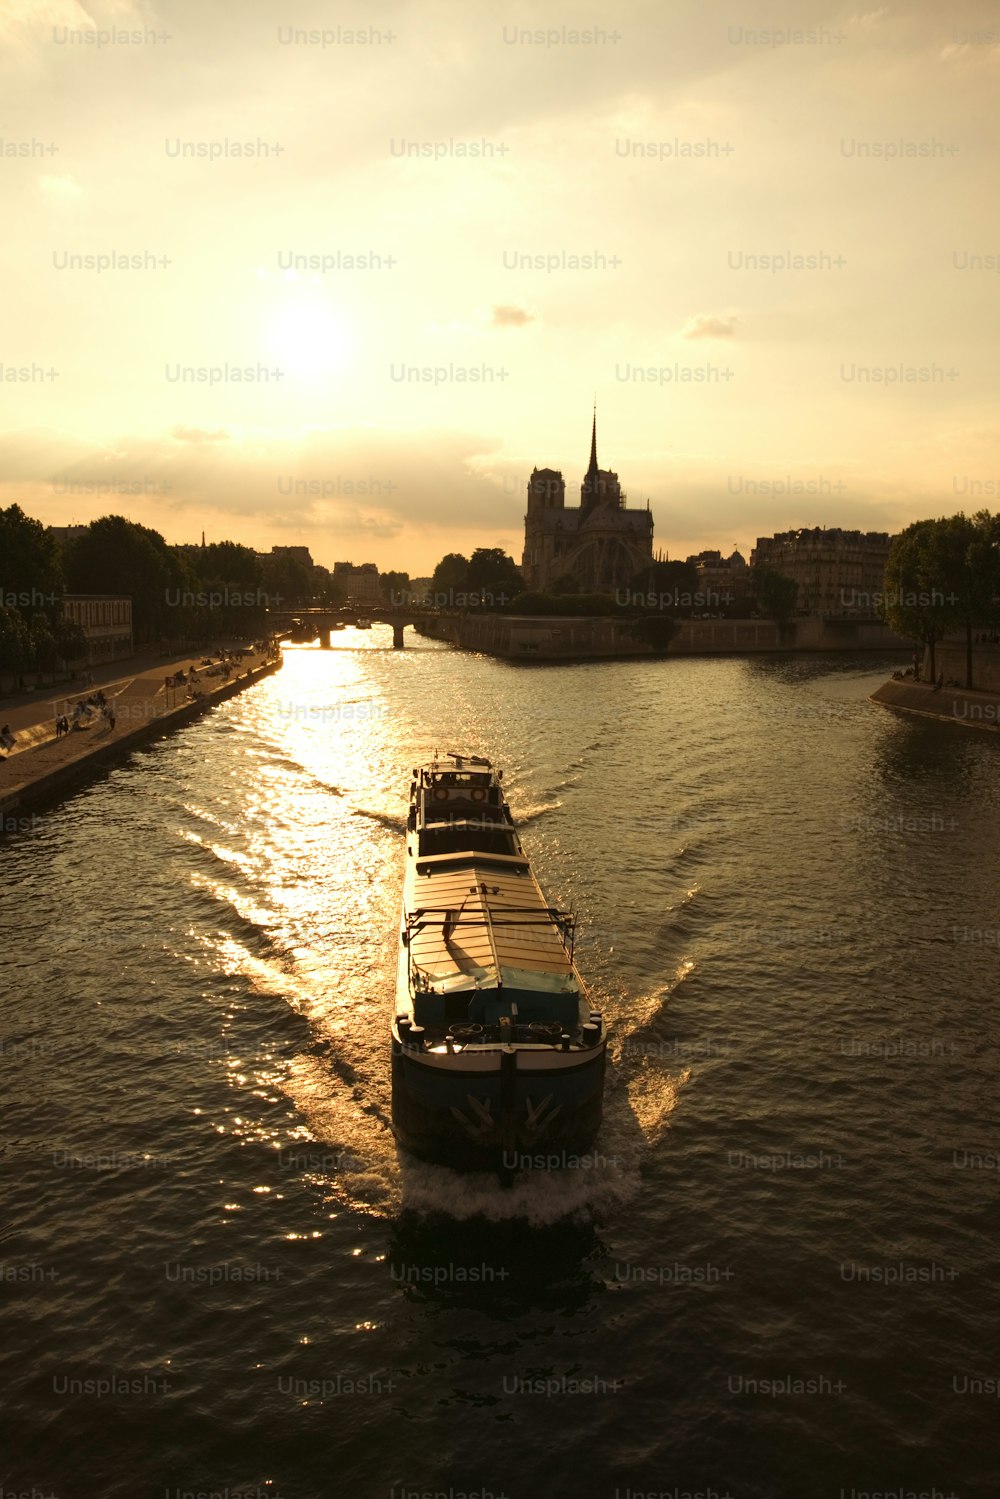 都市の隣の川を下るボート